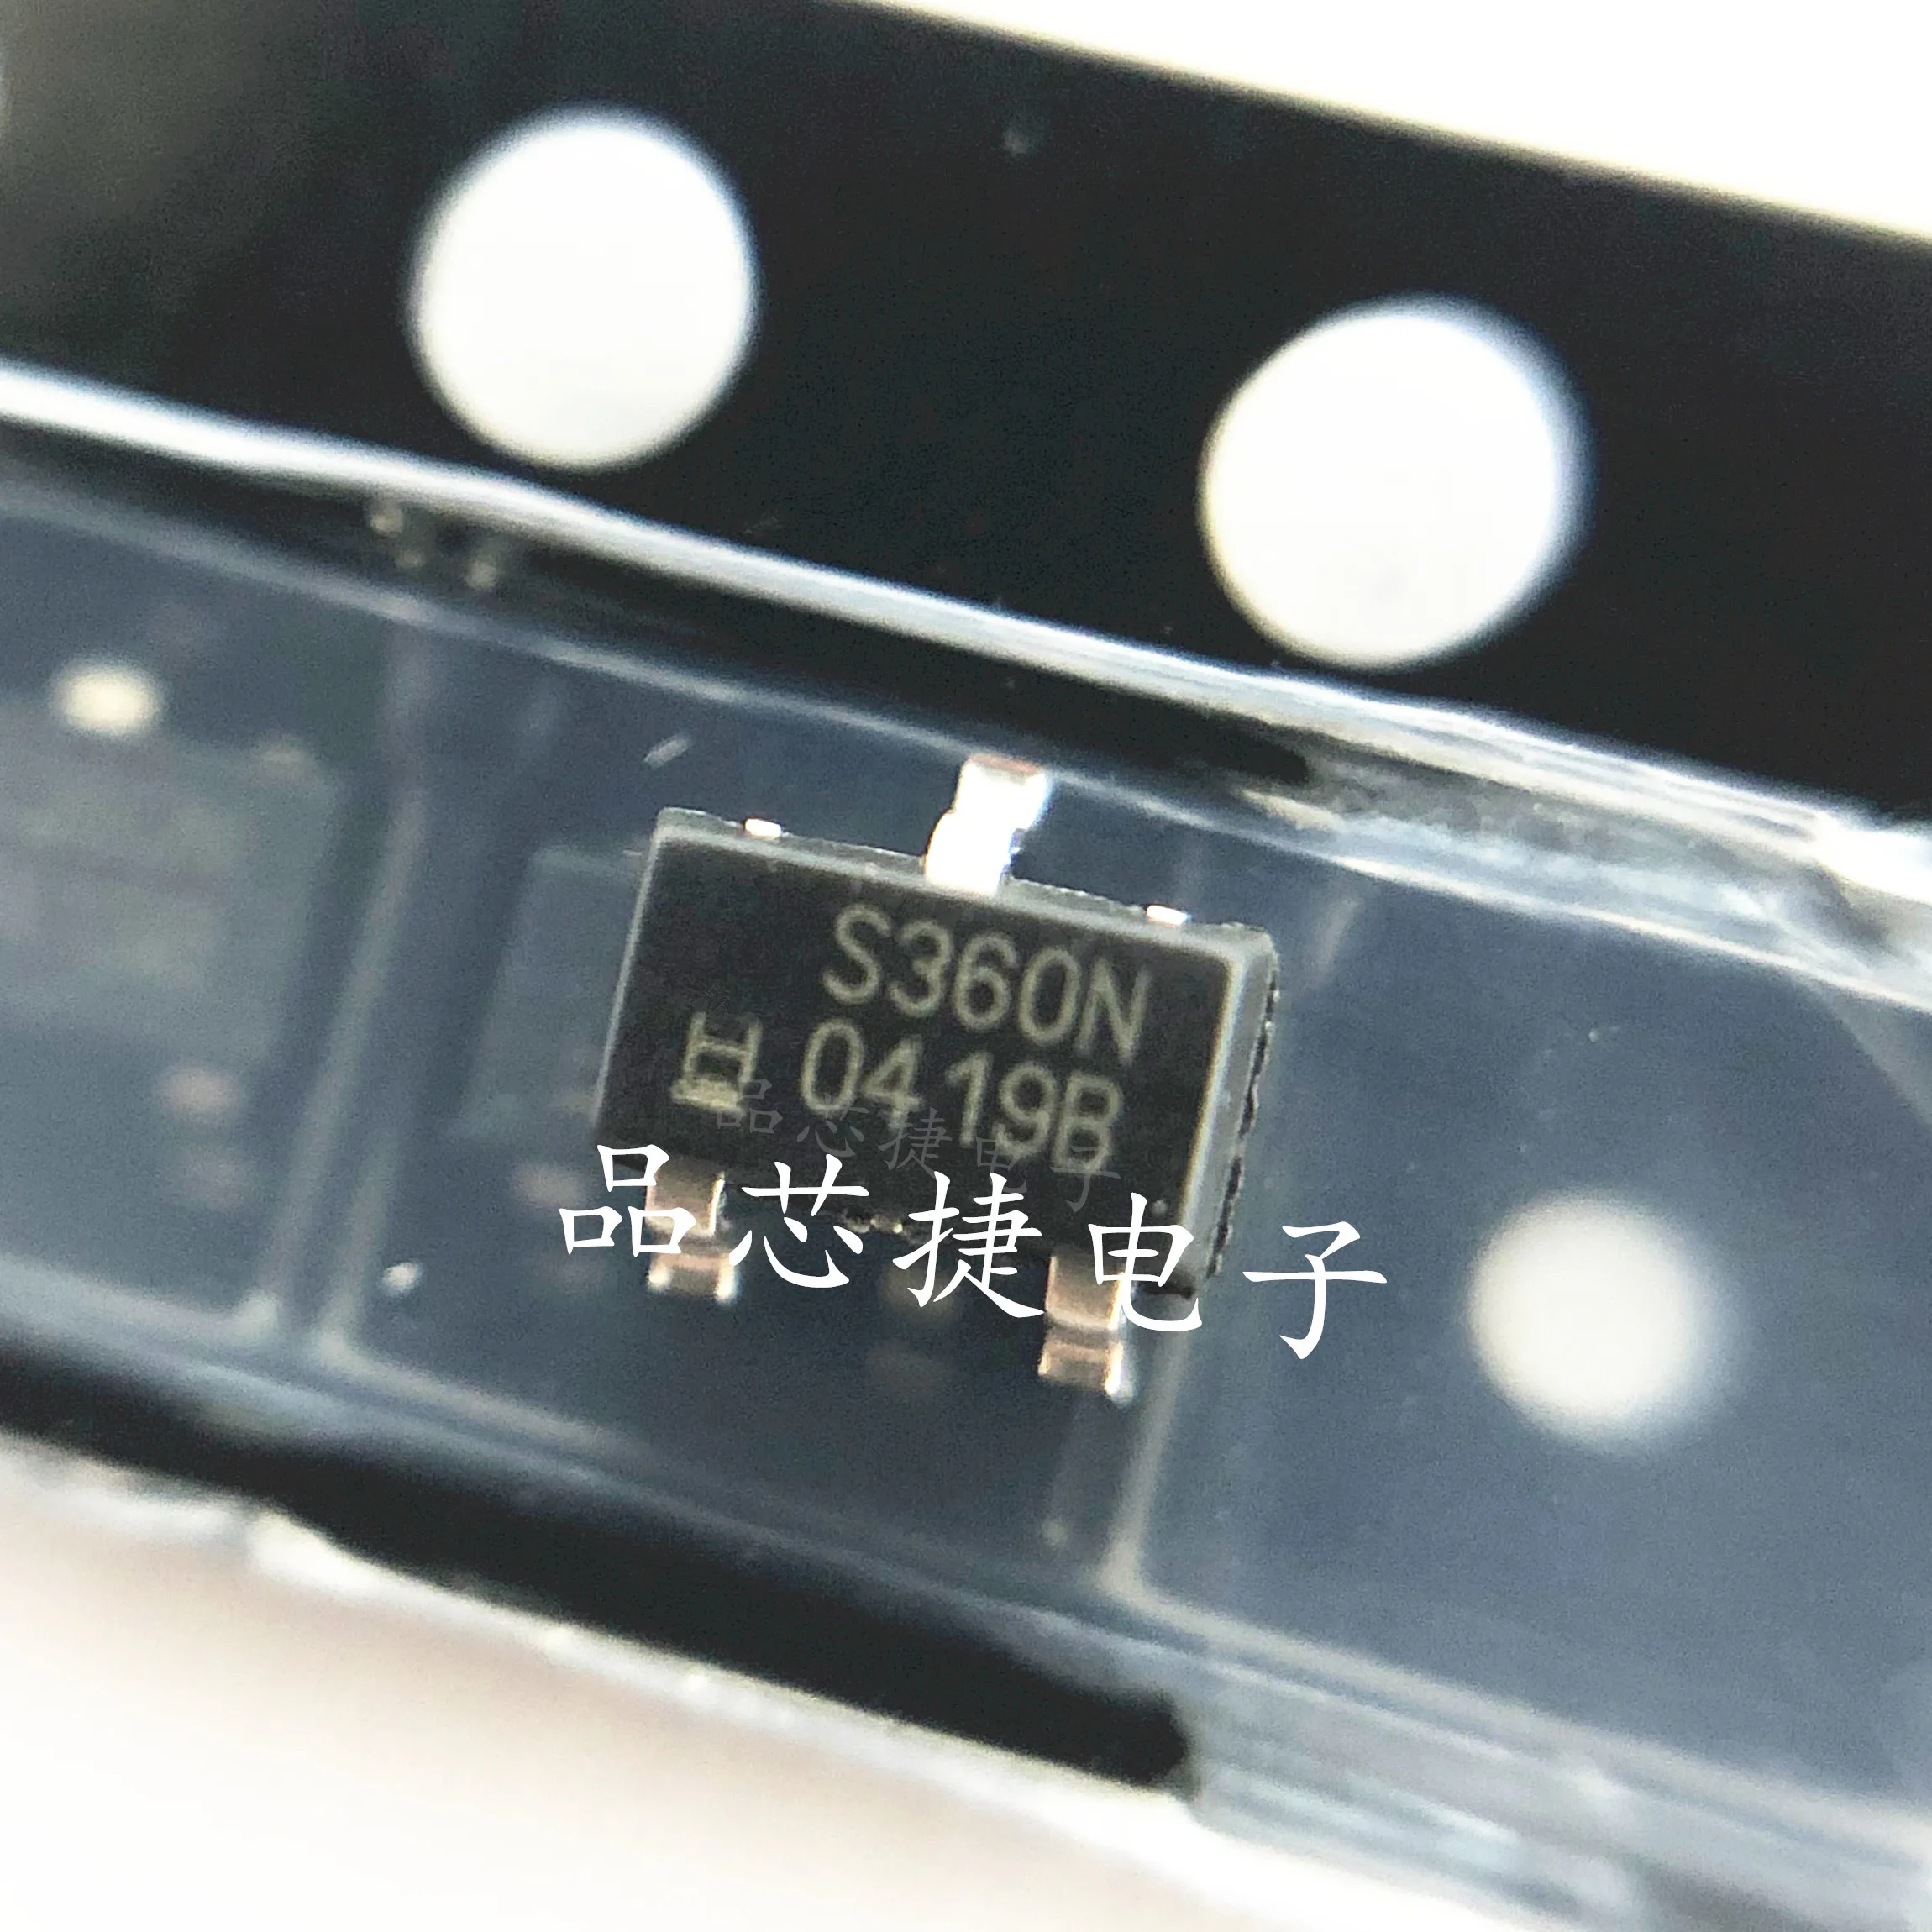 

10 шт. Оригинальный Новый SS360NT Шелковый экран S360N SOT23 Высокочувствительный чип датчика эффекта Холла